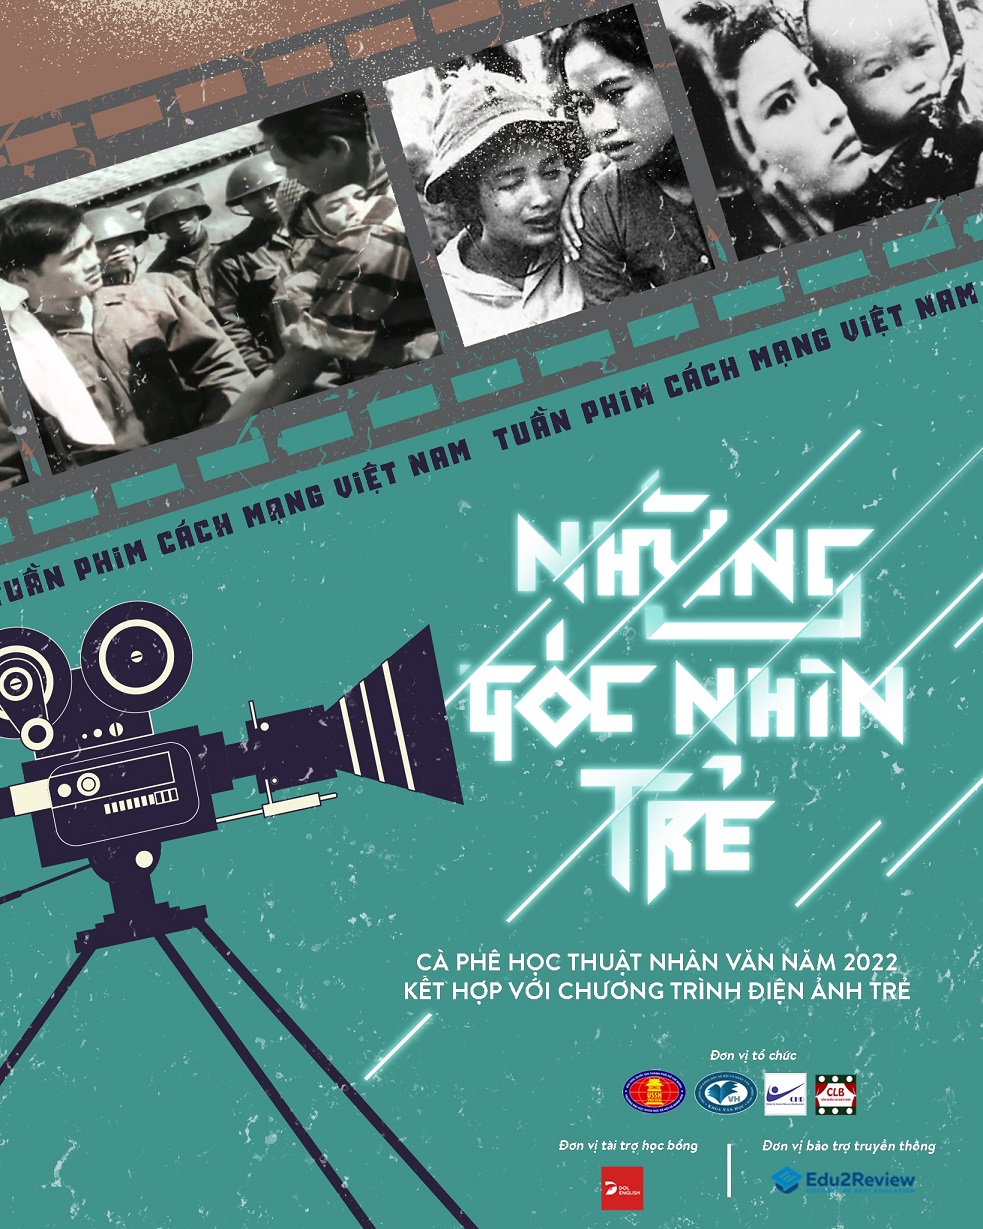 Tuần phim Cách mạng Việt Nam: Tuần phim Cách mạng Việt Nam sẽ mang đến cho bạn những bộ phim đầy lịch sử và ý nghĩa. Hãy cùng chúng tôi tưởng nhớ và tôn vinh những anh hùng đã hy sinh cho đất nước.